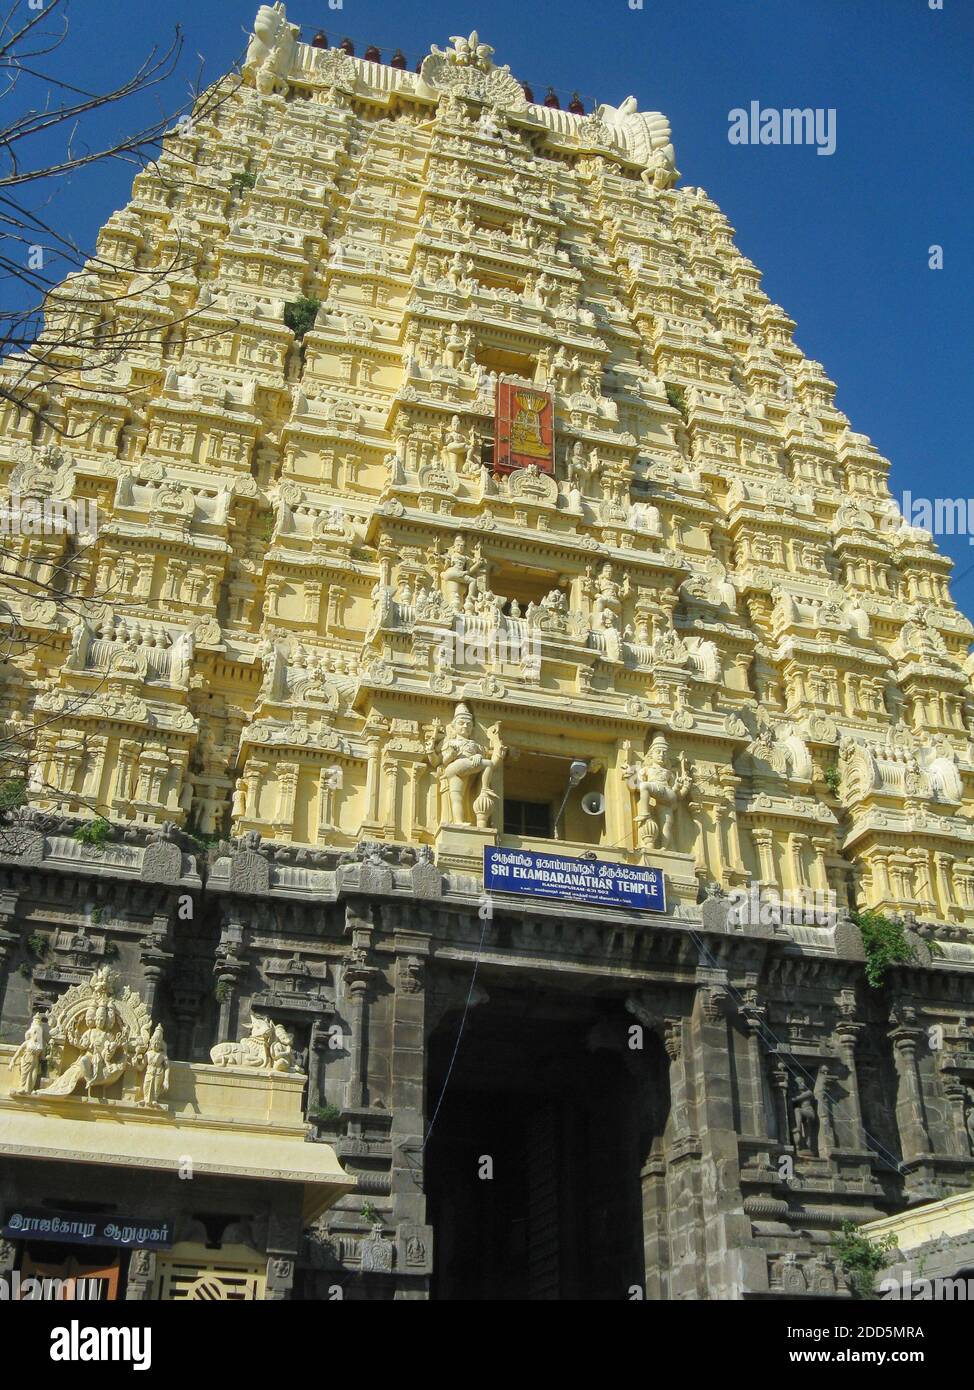 Schnitzwerk auf dem oberen Teil eines Tempels für Hindu-Götter In Südindien bei Kanchipuram in Tamil Nadu Indien geklickt Am 1. Januar 2009 Stockfoto